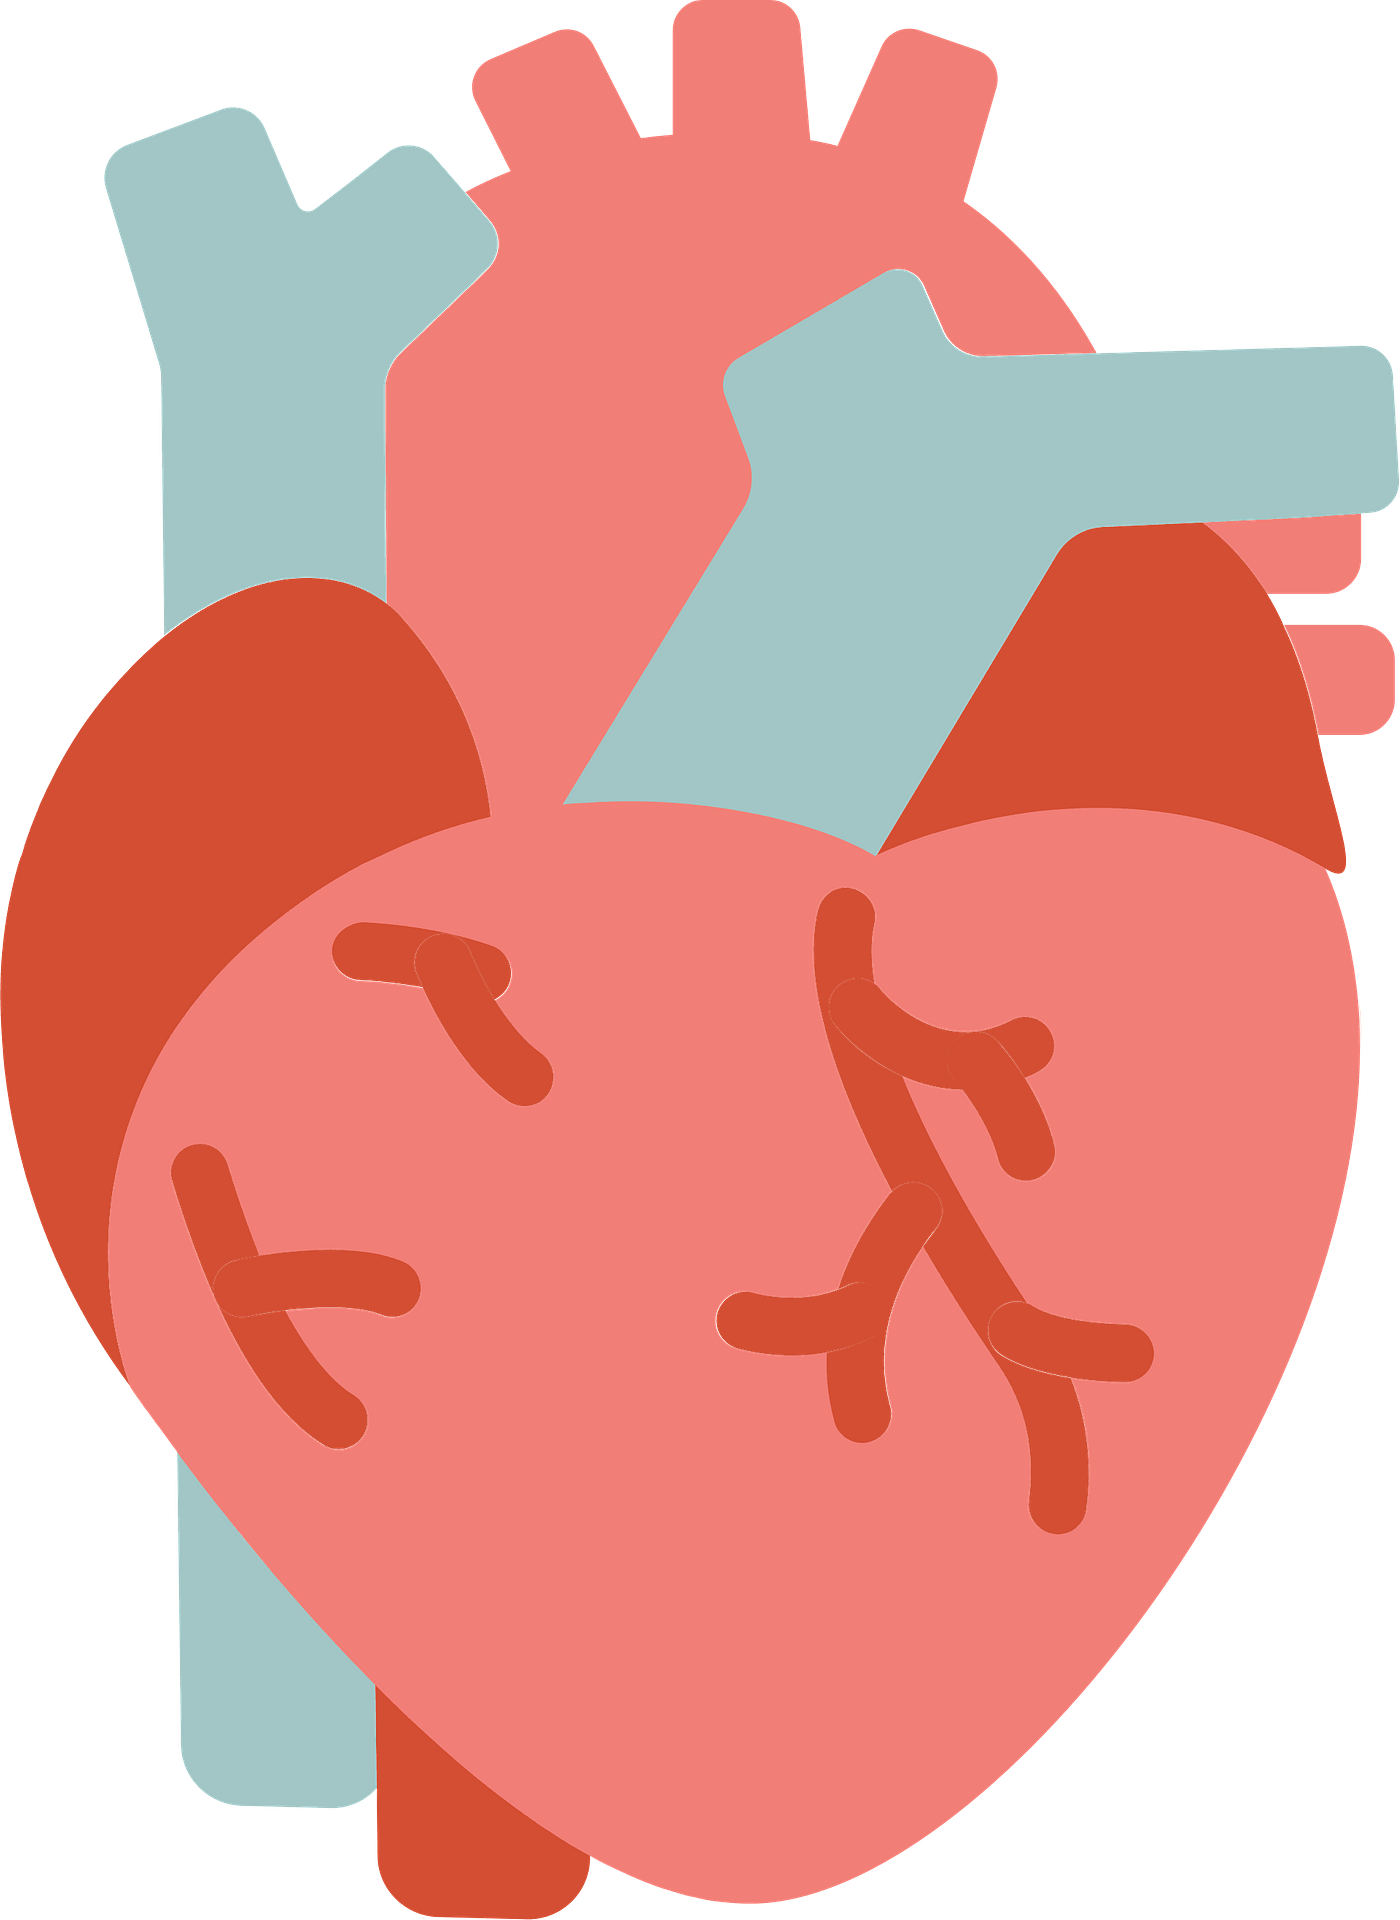 Immagine del cuore del cuore umano di vettore